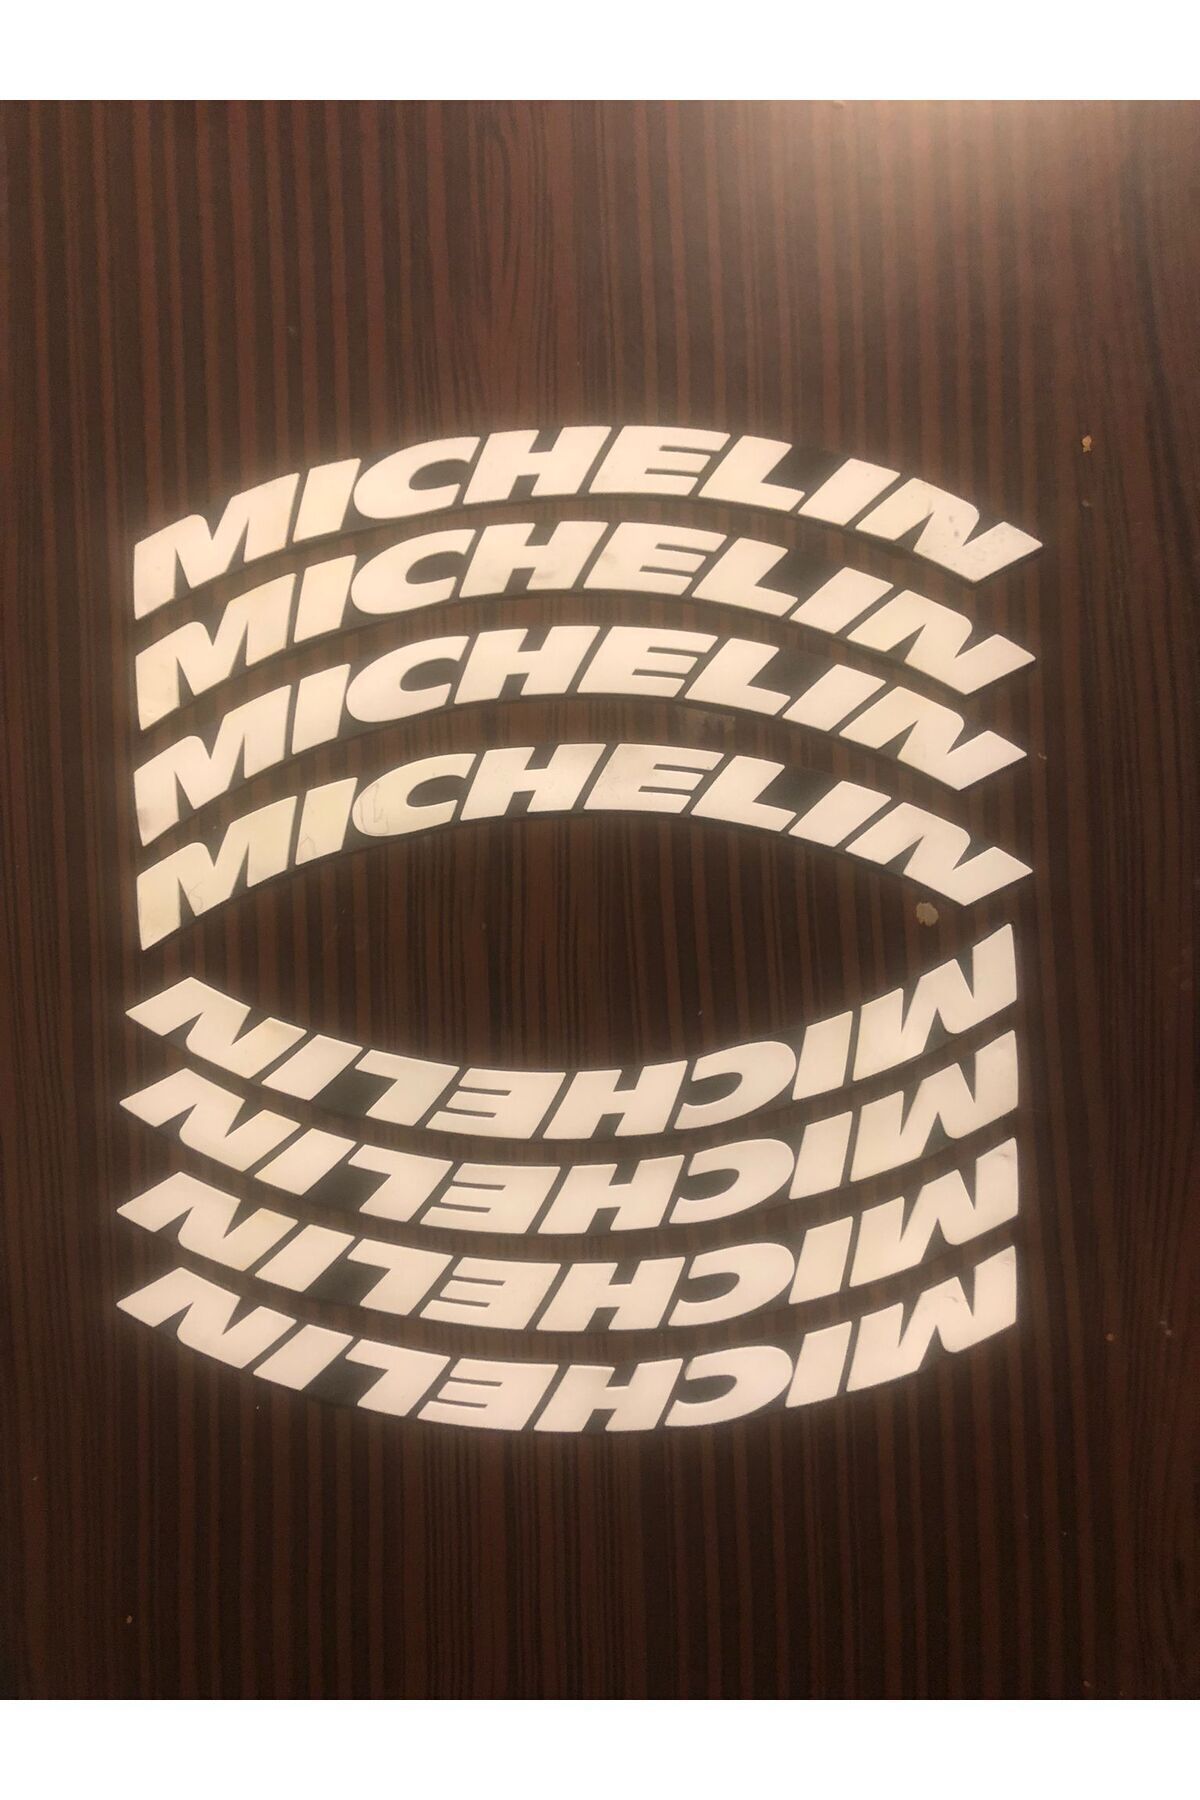 Kingstar Michelin Motosiklet Ve Otomobil Uyumlu Lastik Yazısı Sticker Arma